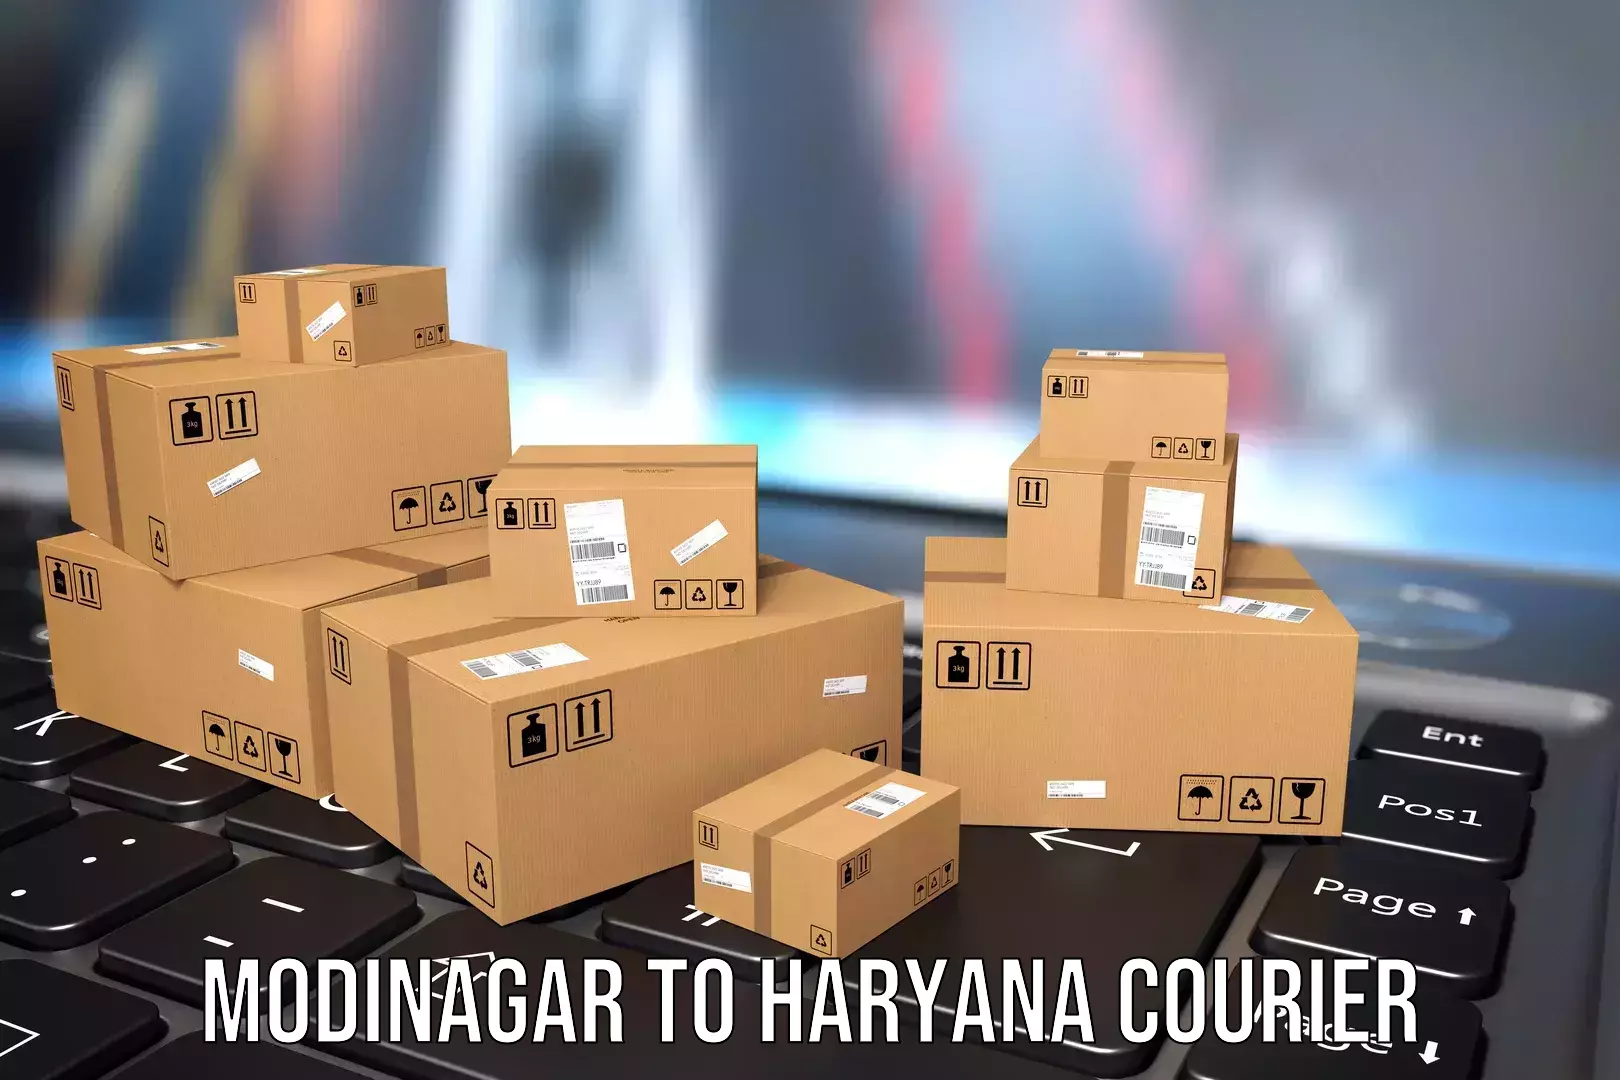 Luggage shipment tracking Modinagar to Chaudhary Charan Singh Haryana Agricultural University Hisar